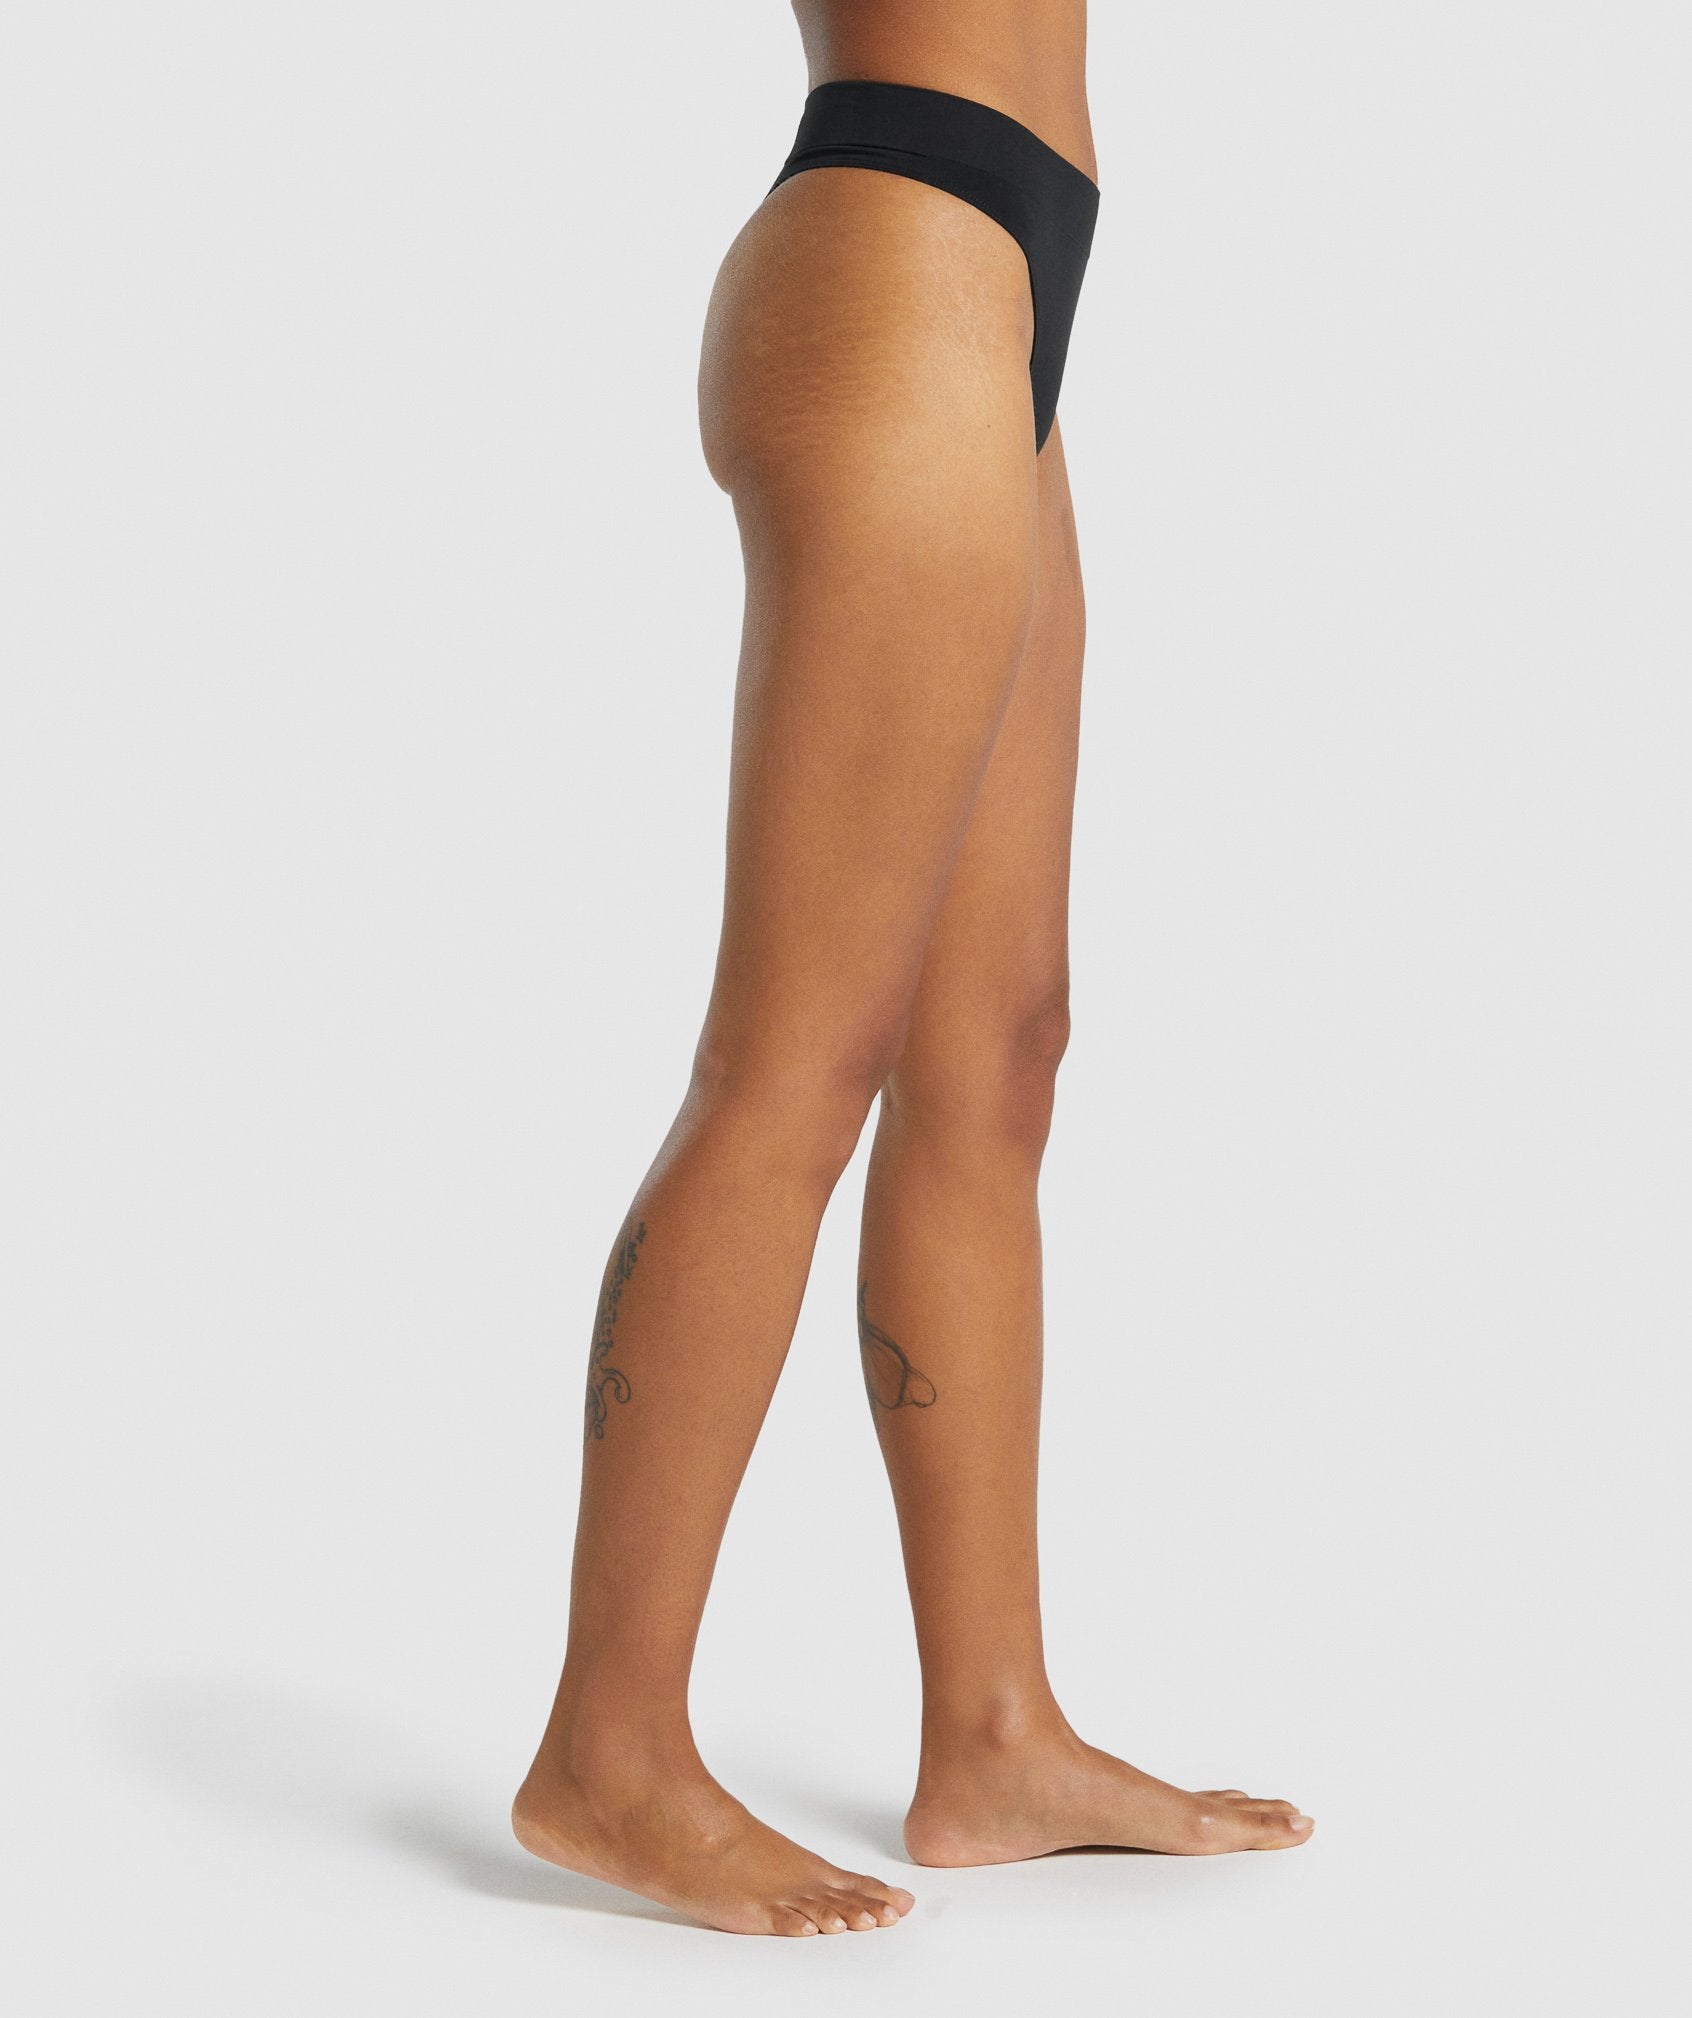 Women's Seamless Underwear - Gym Underwear from Gymshark